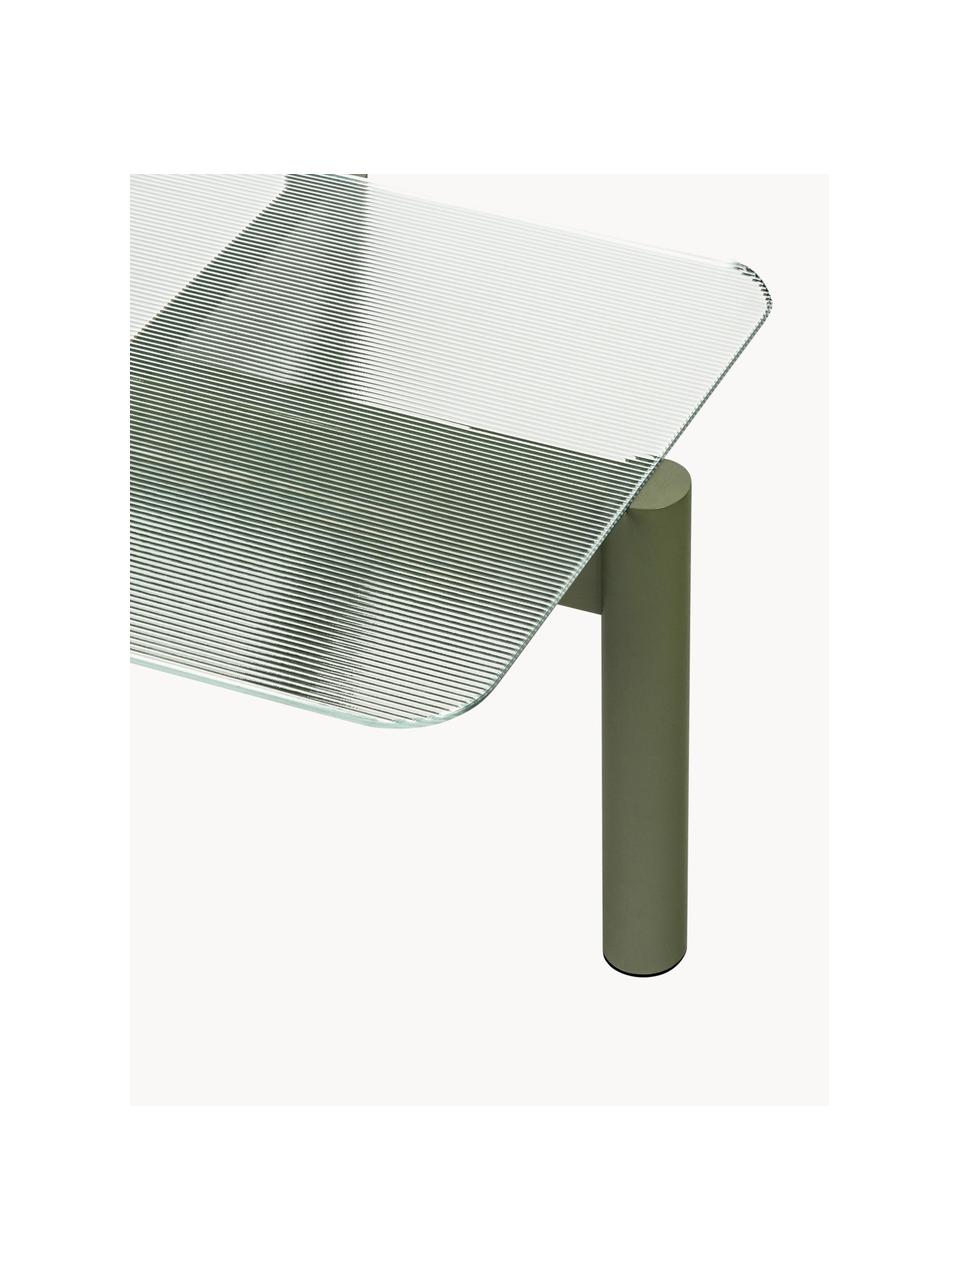 Table basse en hêtre avec plateau en verre Kob, Transparent, vert olive, larg. 110 x prof. 41 cm